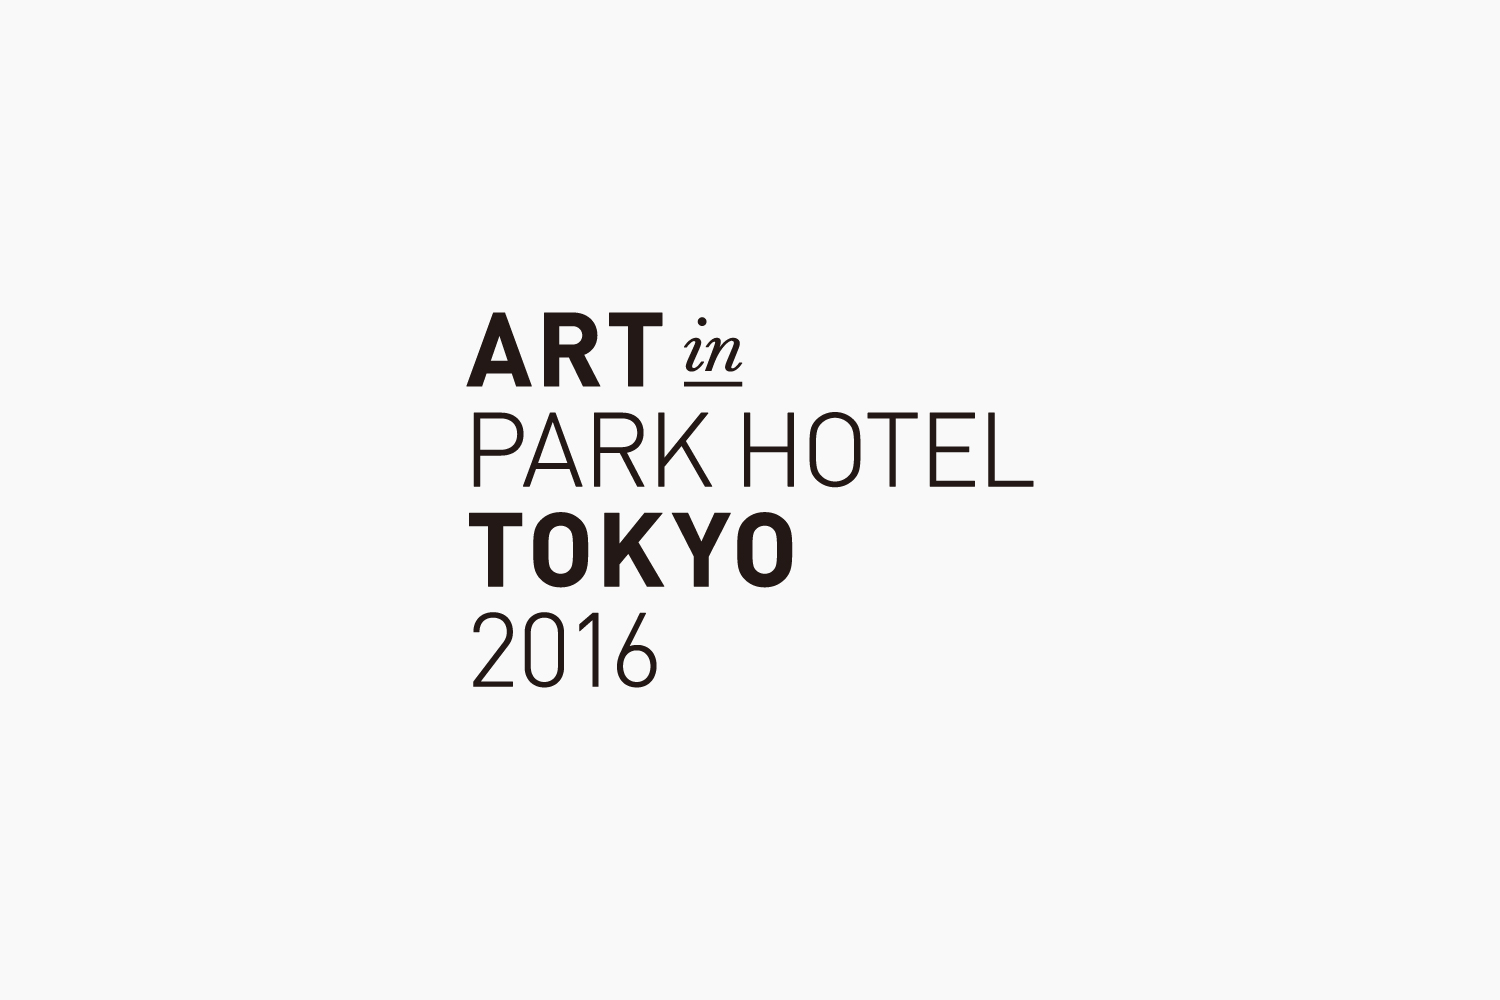 ART in PART HOTEL TOKYO 2016